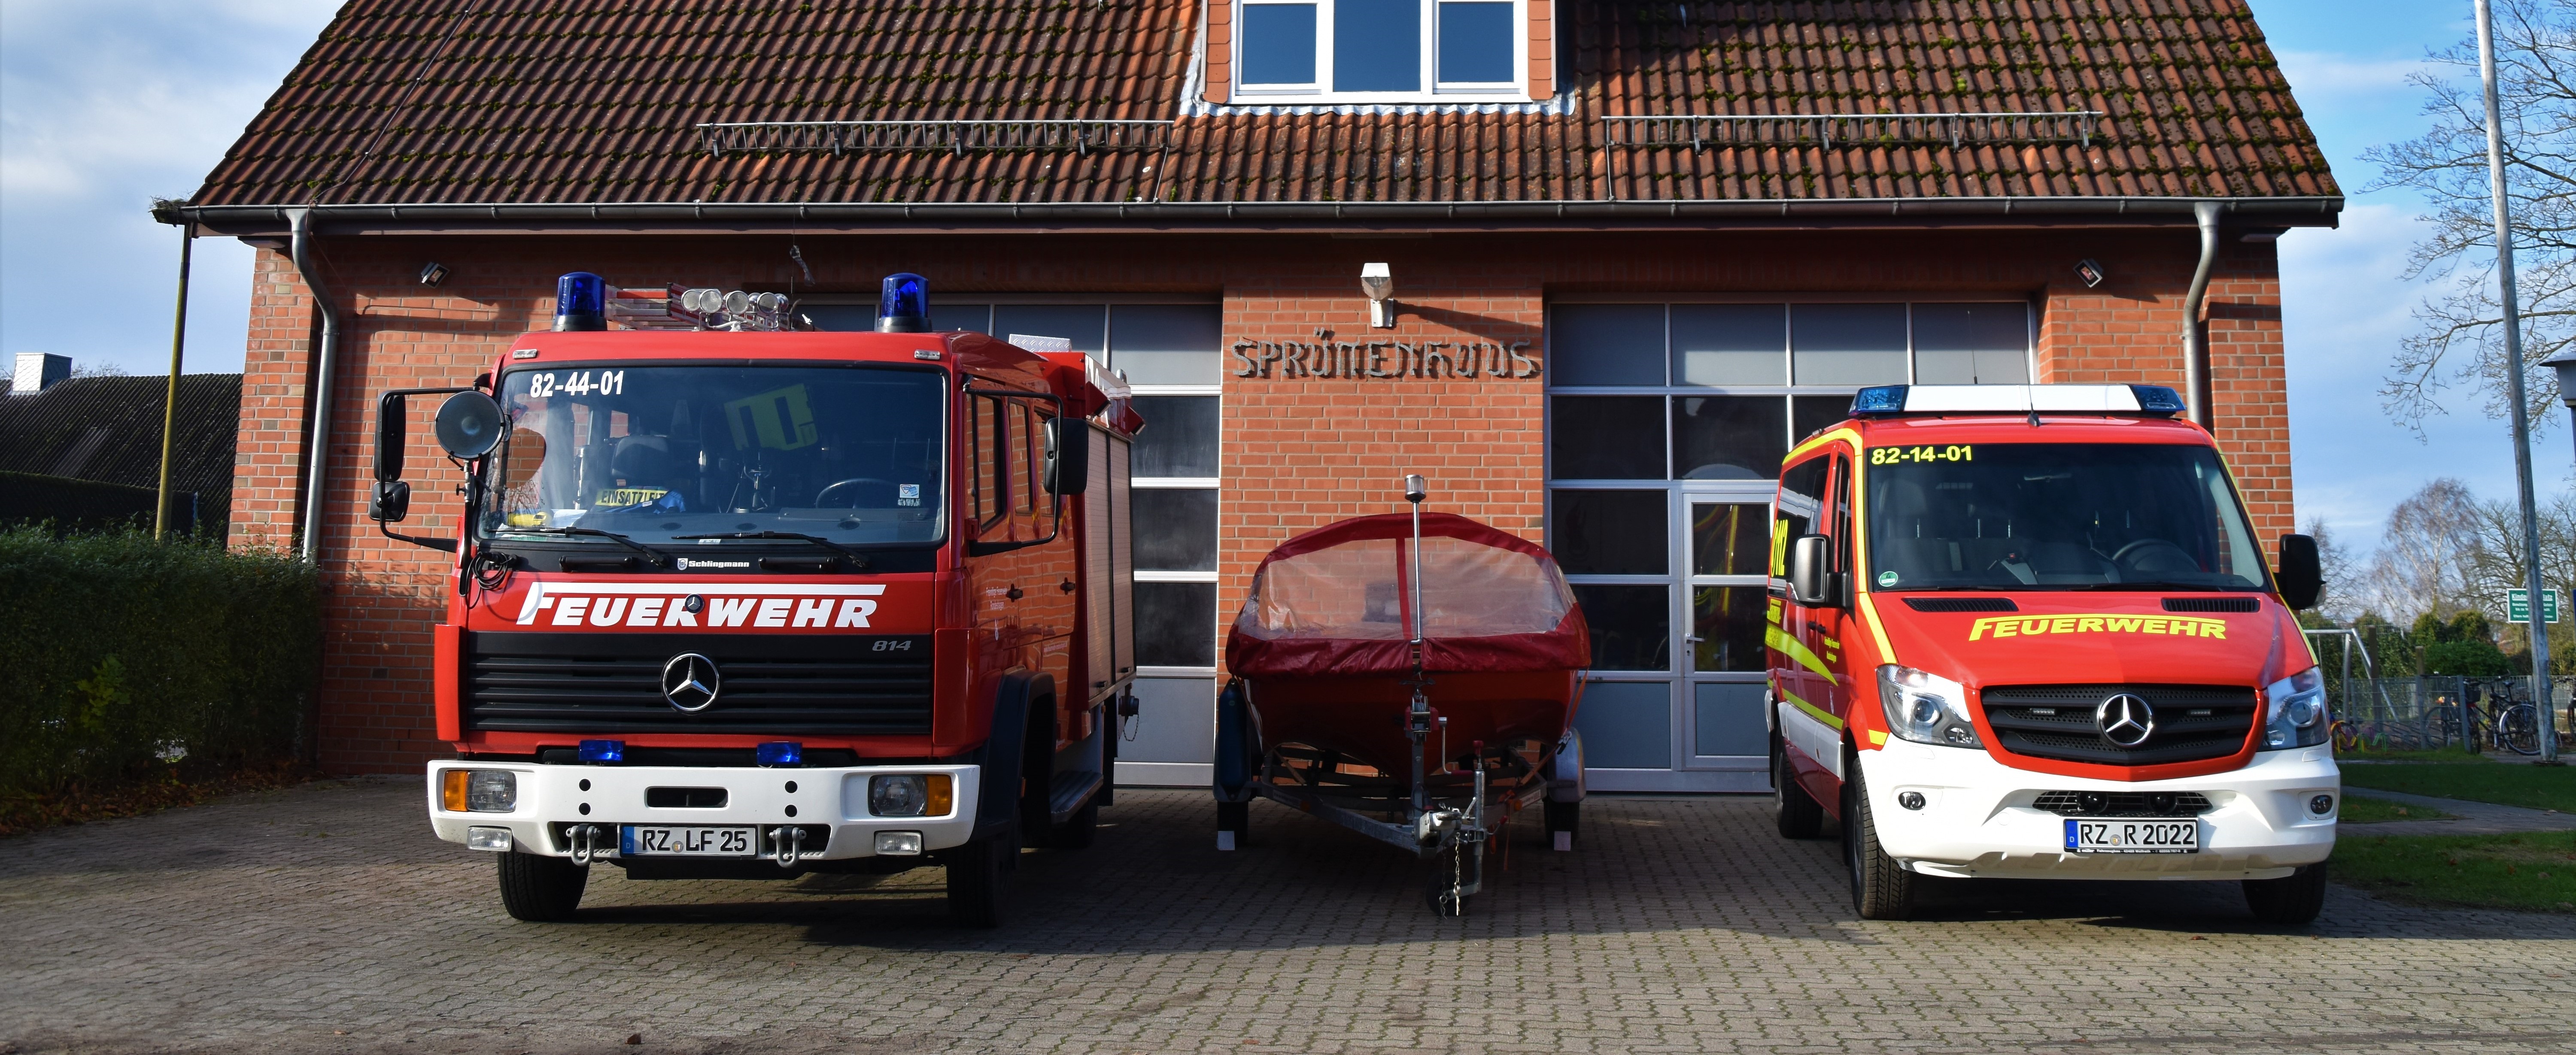 (c) Feuerwehr-rondeshagen.de